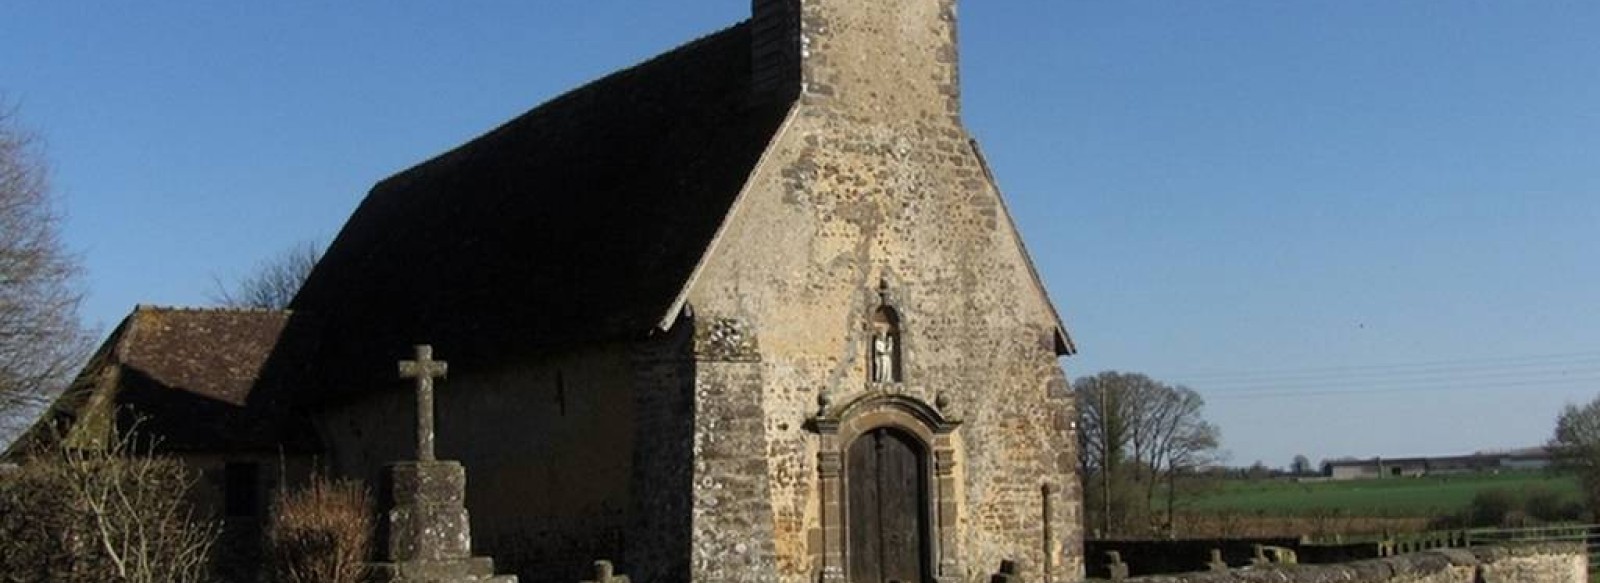 Eglise Notre-Dame-des-Champs